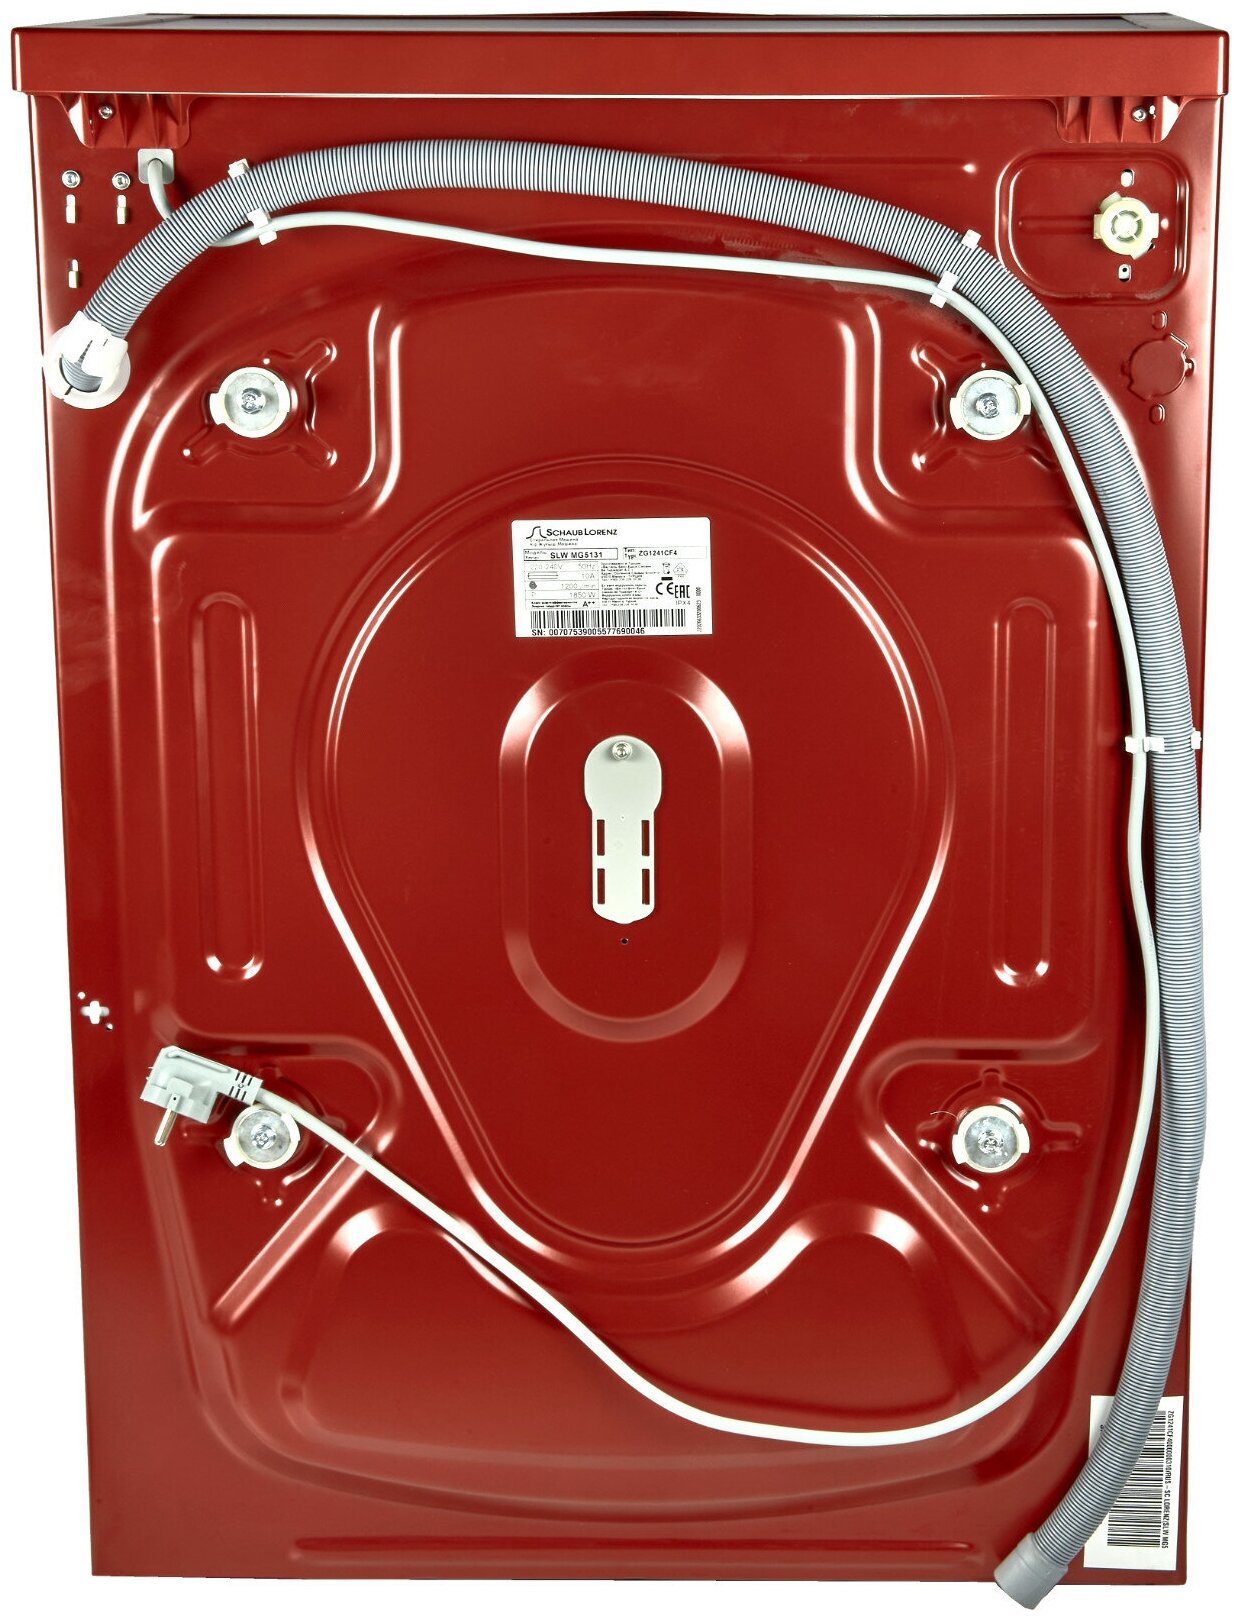 Узкая стиральная машина, 84.5x59.7x41.6 см, загрузка фронтальная, 6кг, до 1200 об/мин при отжиме, A++, LED дисплей, красная - фотография № 15